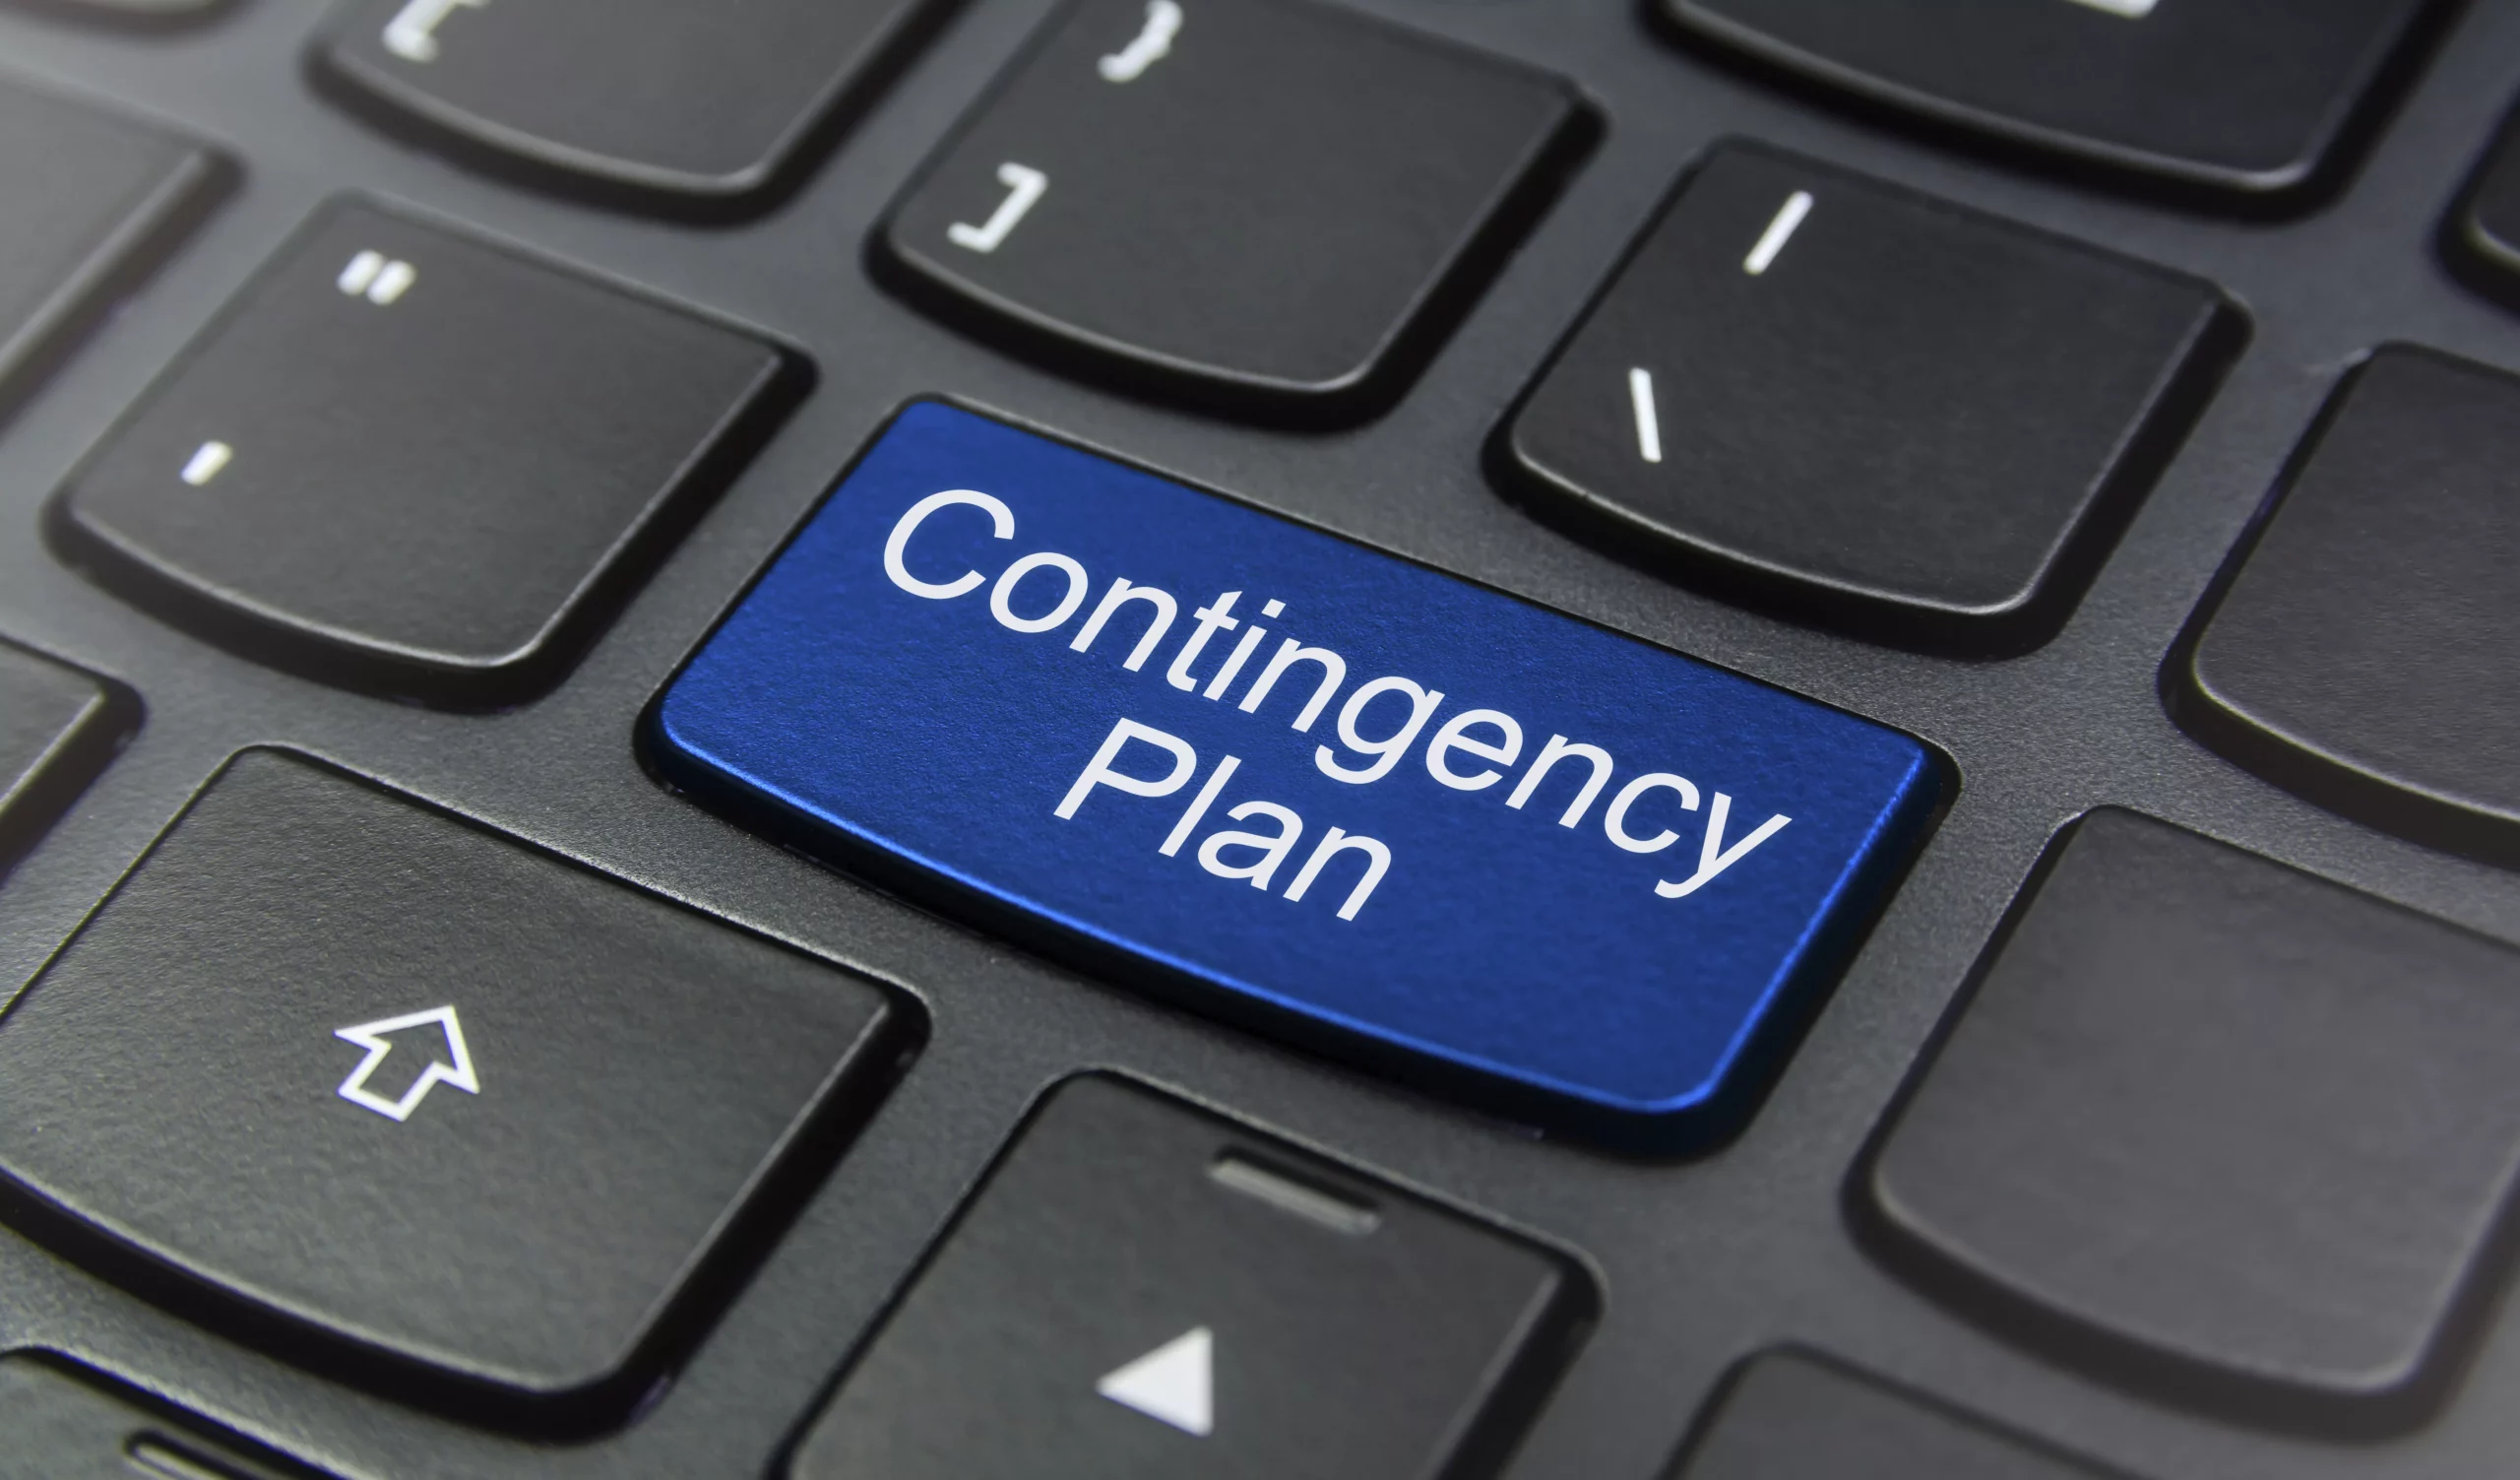 Teclado con el botón de "Contingency Plan" BCP y DRP: ¿Cuáles son sus diferencias?